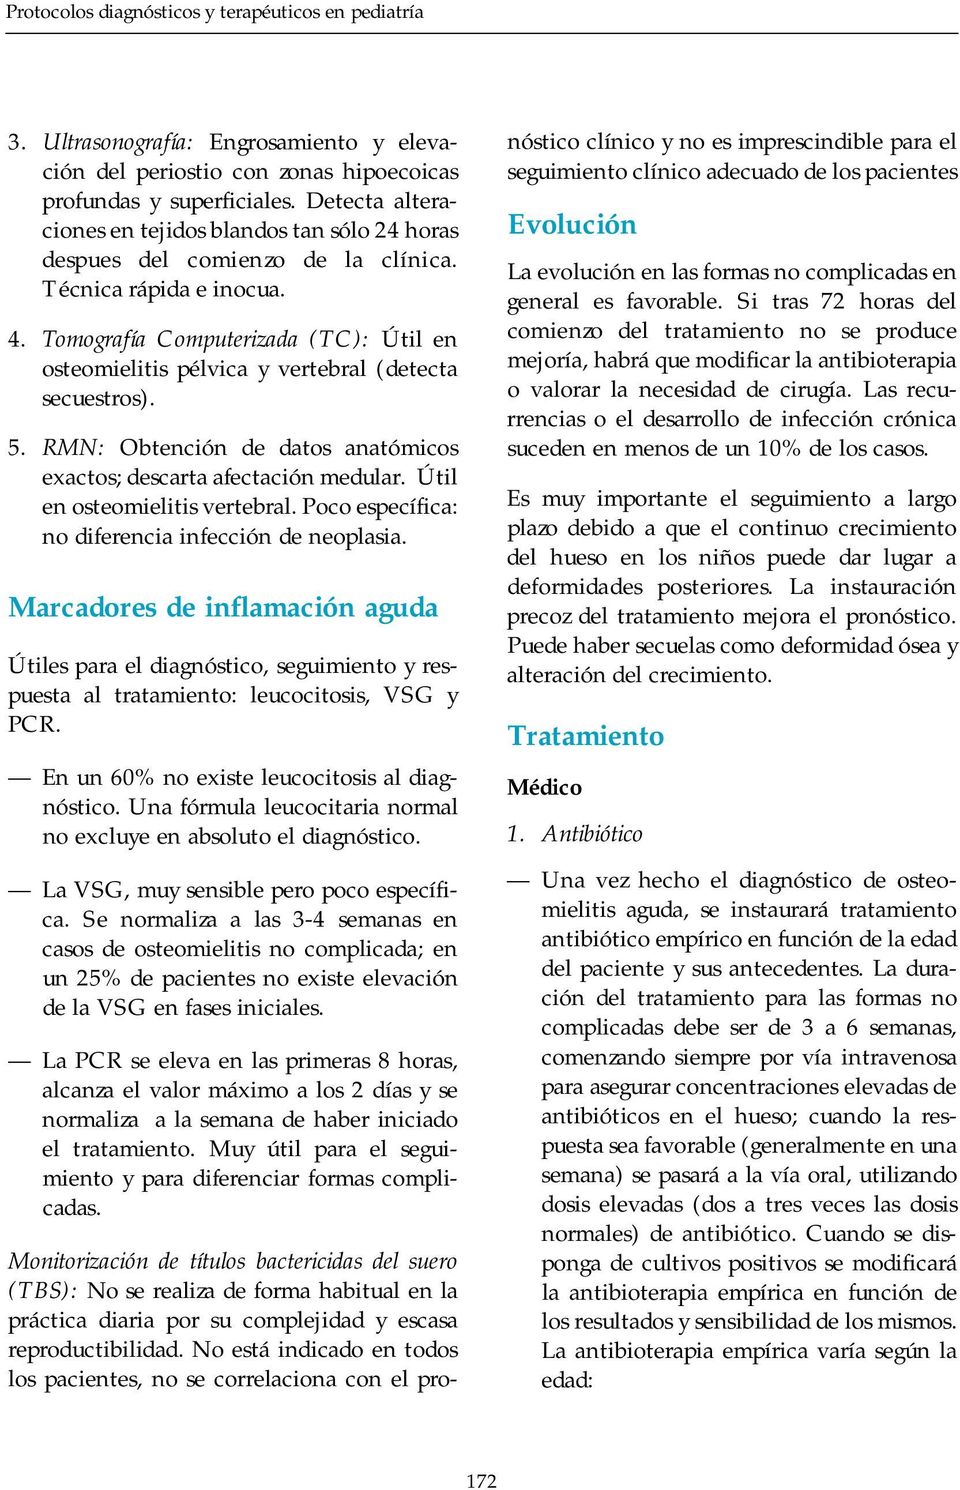 Tomografía Computerizada (TC): Útil en osteomielitis pélvica y vertebral (detecta secuestros). 5. RMN: Obtención de datos anatómicos exactos; descarta afectación medular.